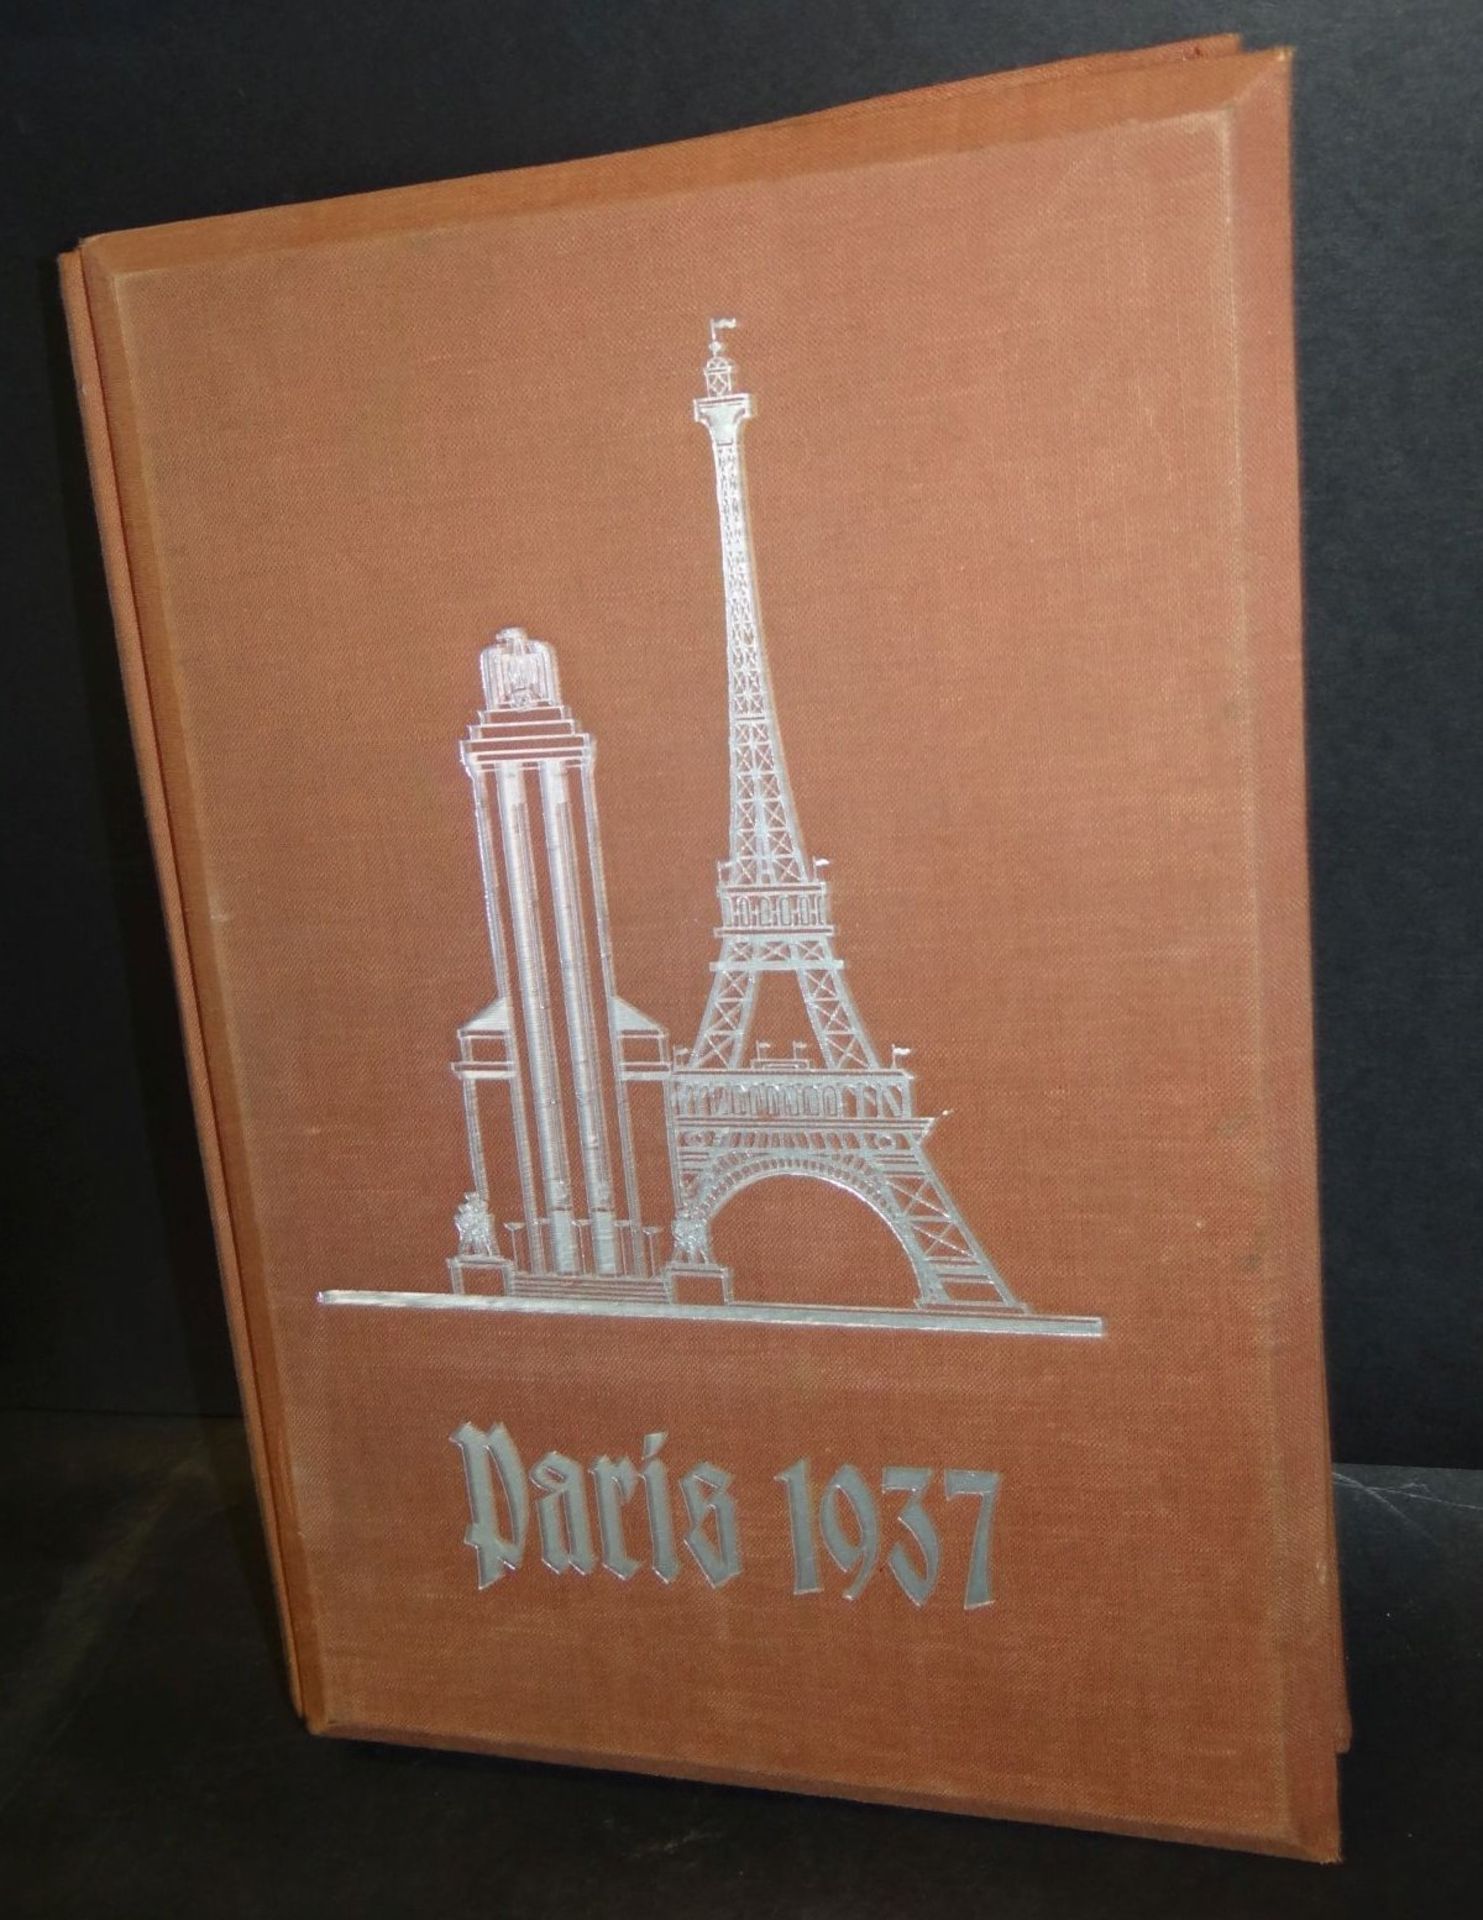 Raumbild-Album "Paris 1937" mit 100 Fotos von H. Hoffmann, Bildberichterstatter der NSDAP, mit einer